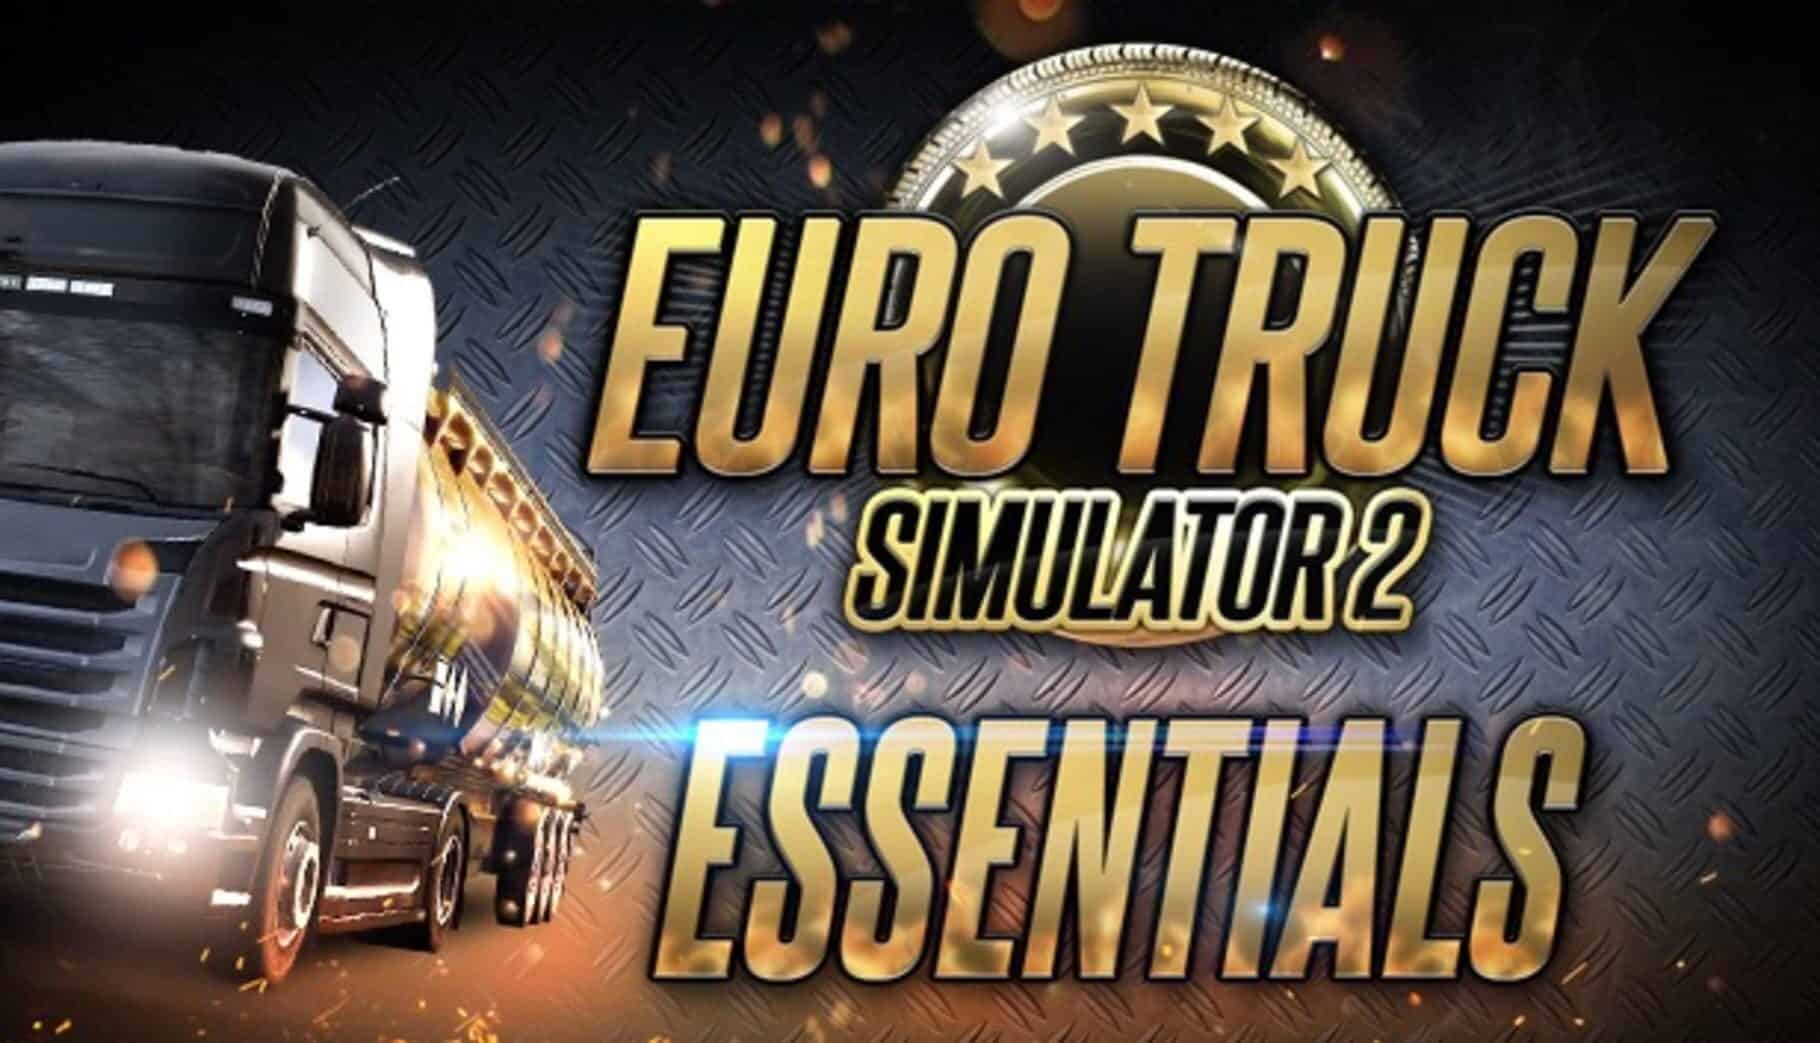 Euro Truck Simulator 2: Essentials